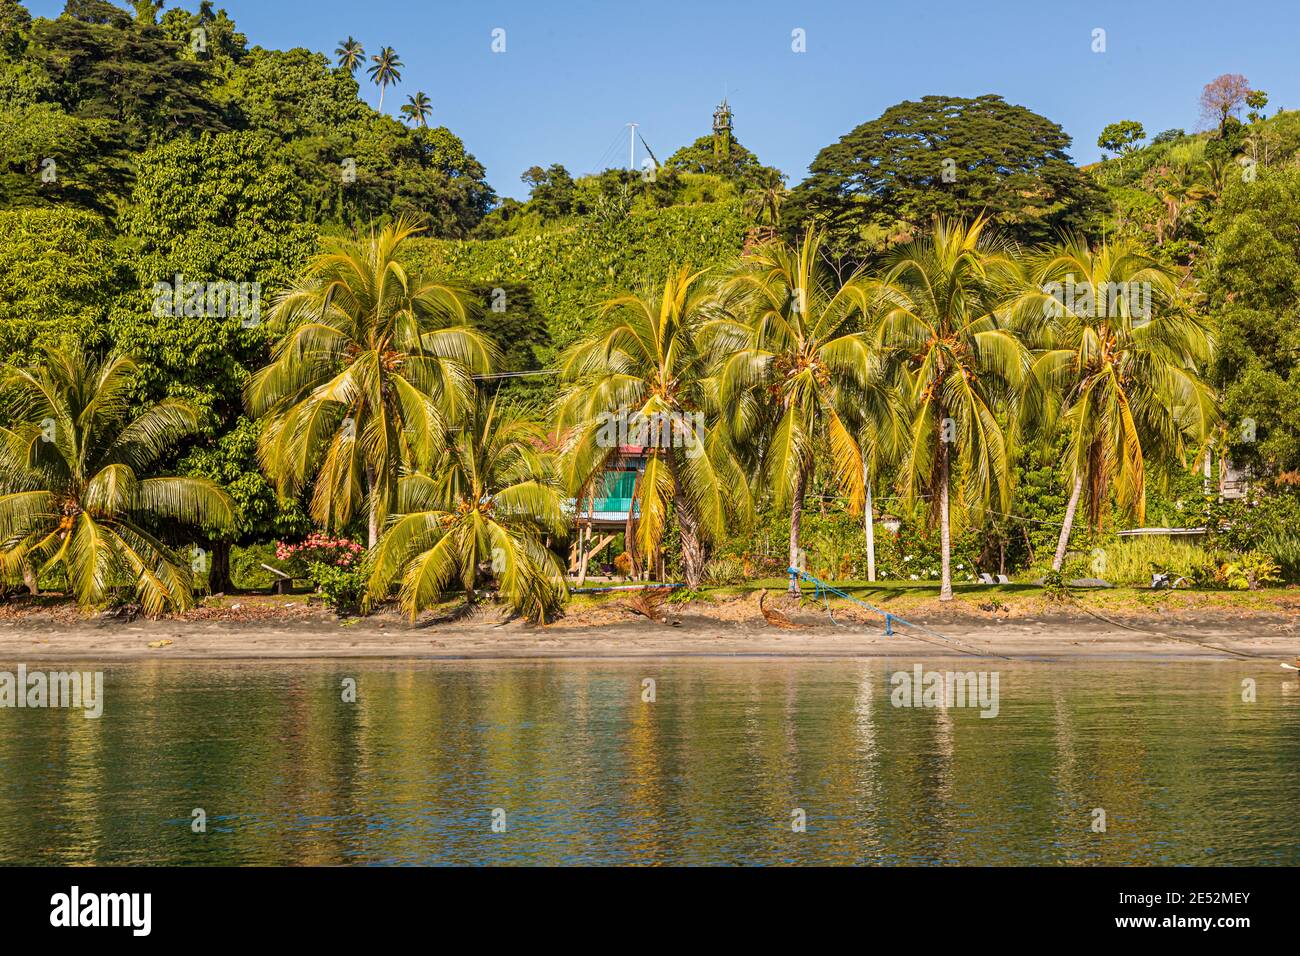 The coast off Kieta, the former capital of Bougainville, Papua New Guinea Stock Photo